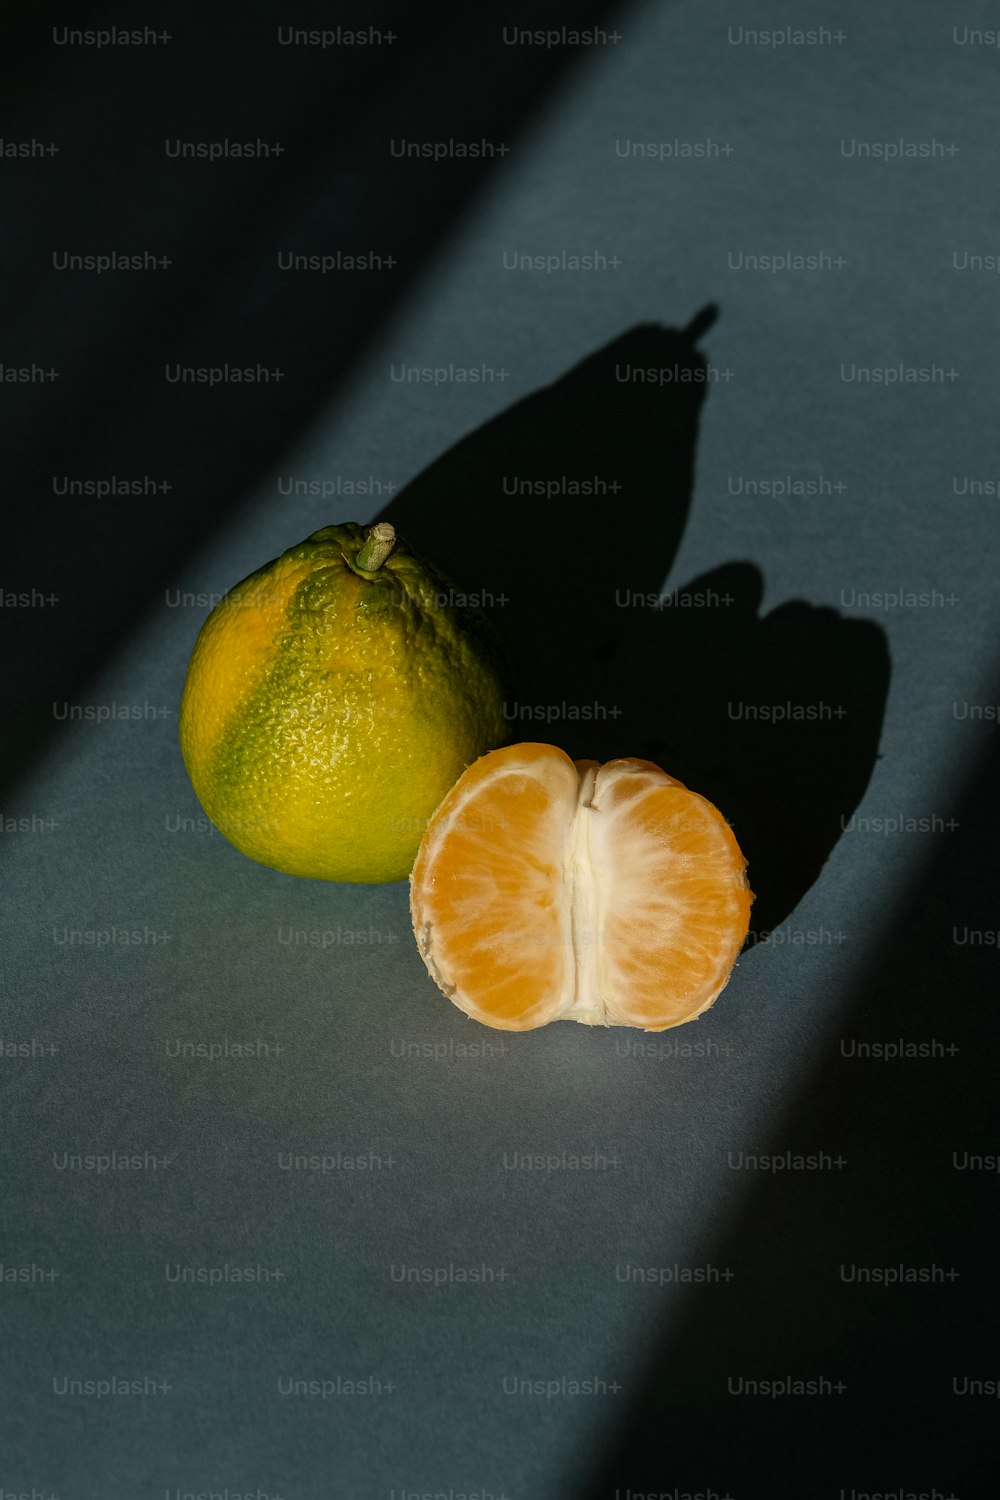 레몬 옆에 반으로 자른 오렌지